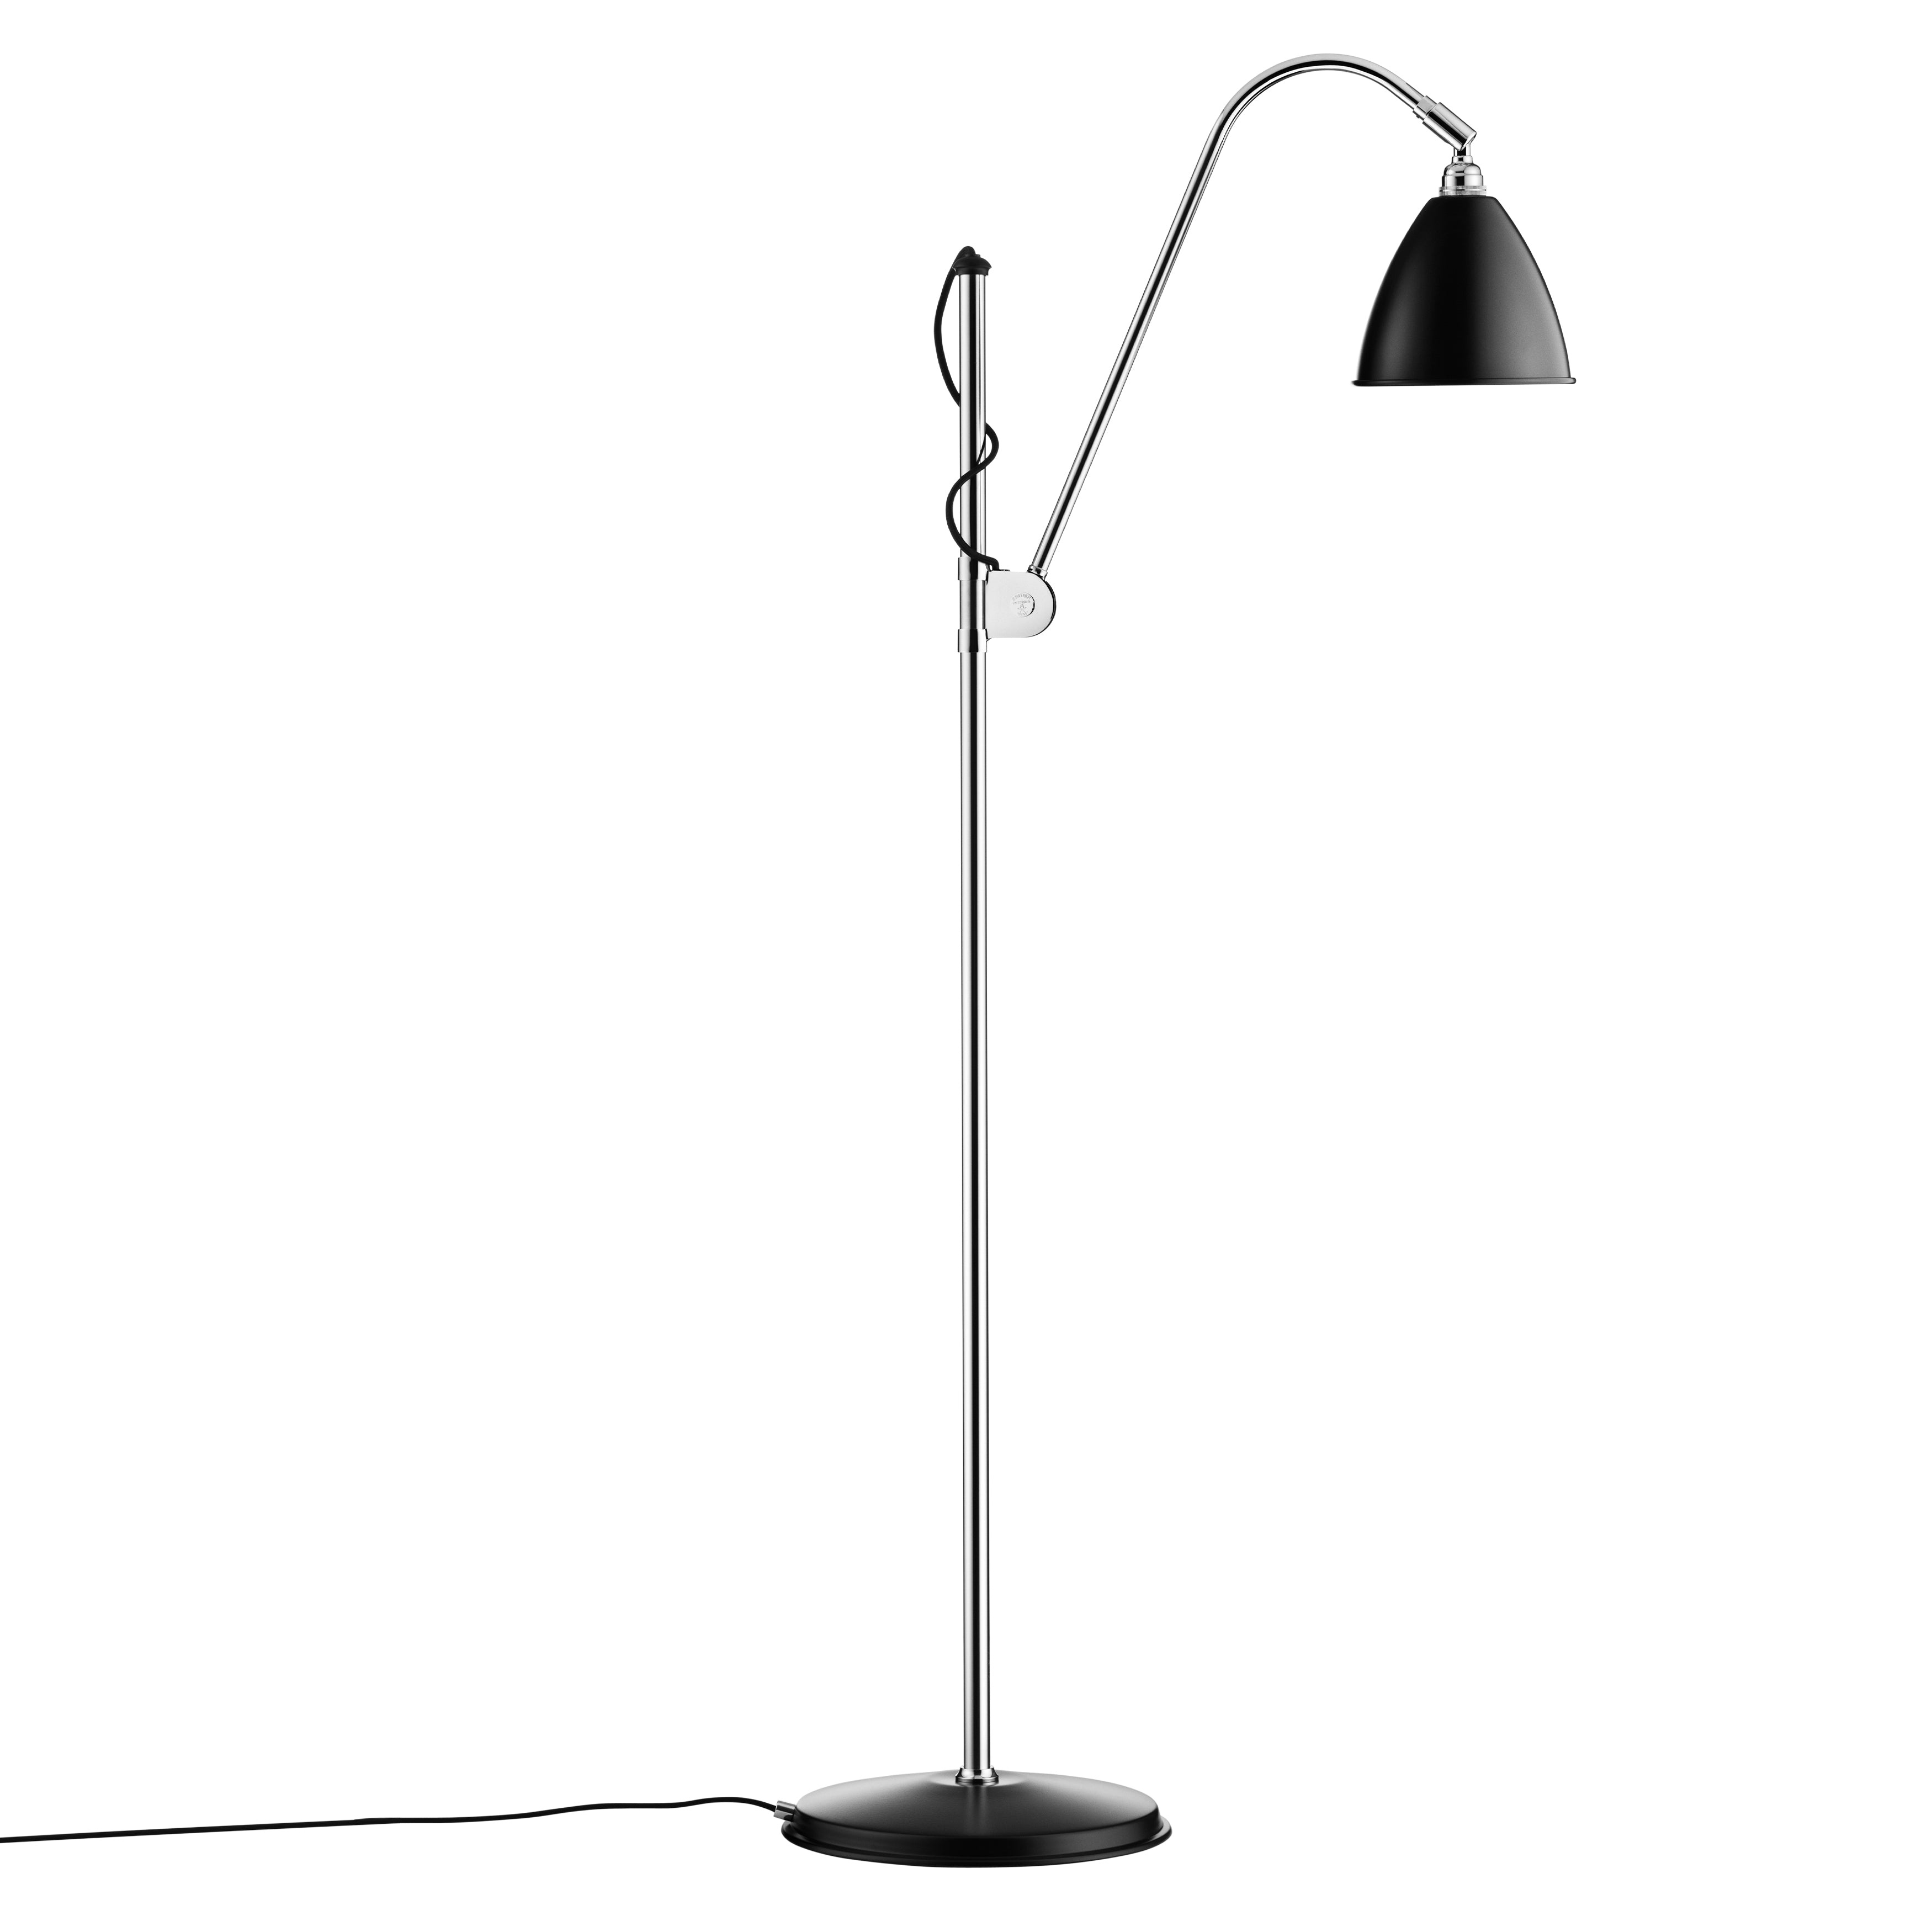 Bestlite BL3 Floor Lamp: chrome + black + Small - 6.3